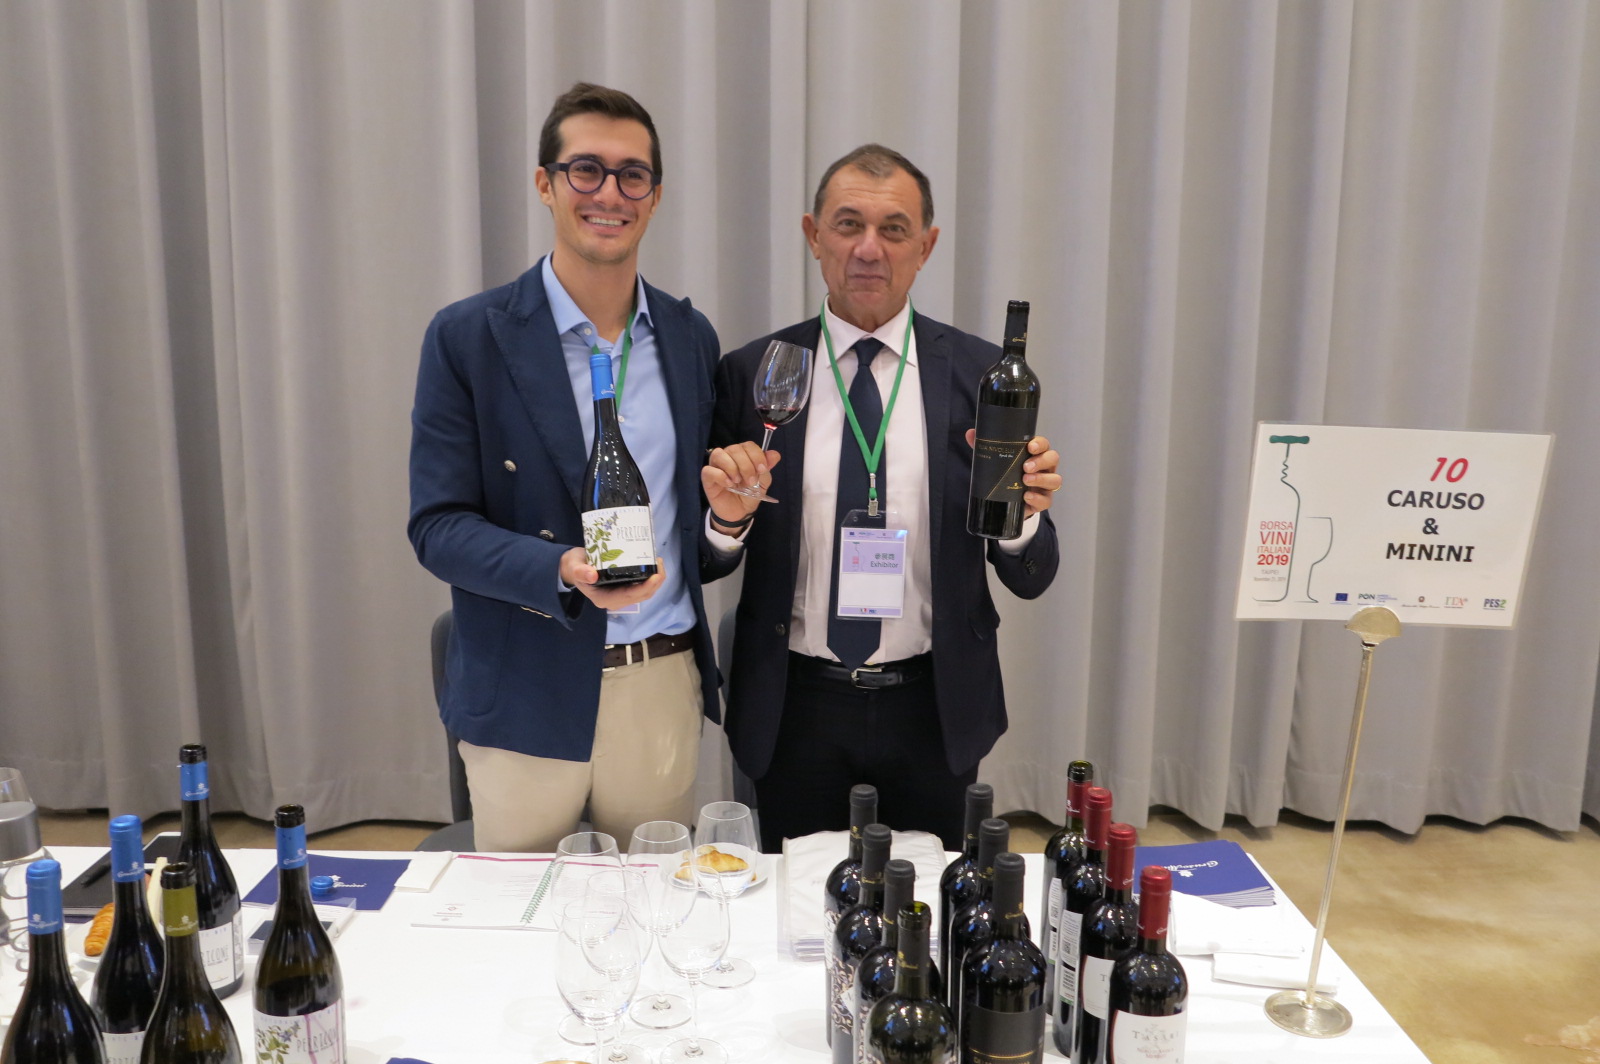 西西里著名酒莊Caruso & Minini出產多種義大利原生品種葡萄酒，在台灣市場已耕耘多年。莊主Stefano Caruso(右)以帶領家人一同經營而感到自豪，圖左為女婿Andrea Artusio。